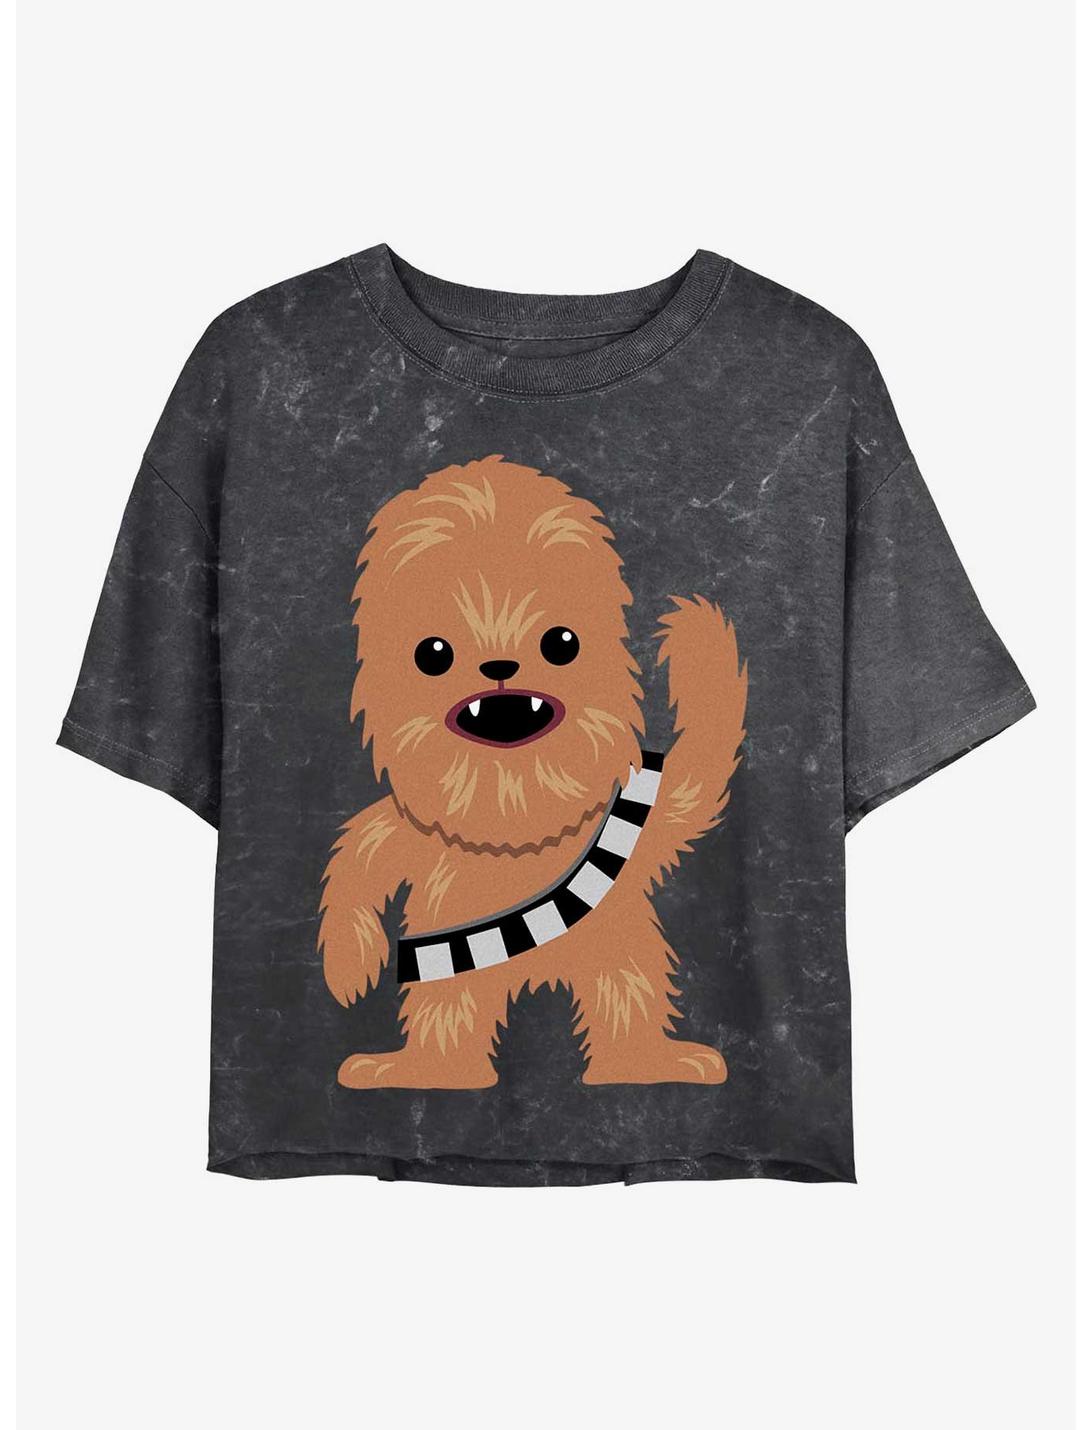 Star Wars Chewie Cutie Mineral Wash Crop Womens T-Shirt, BLACK, hi-res